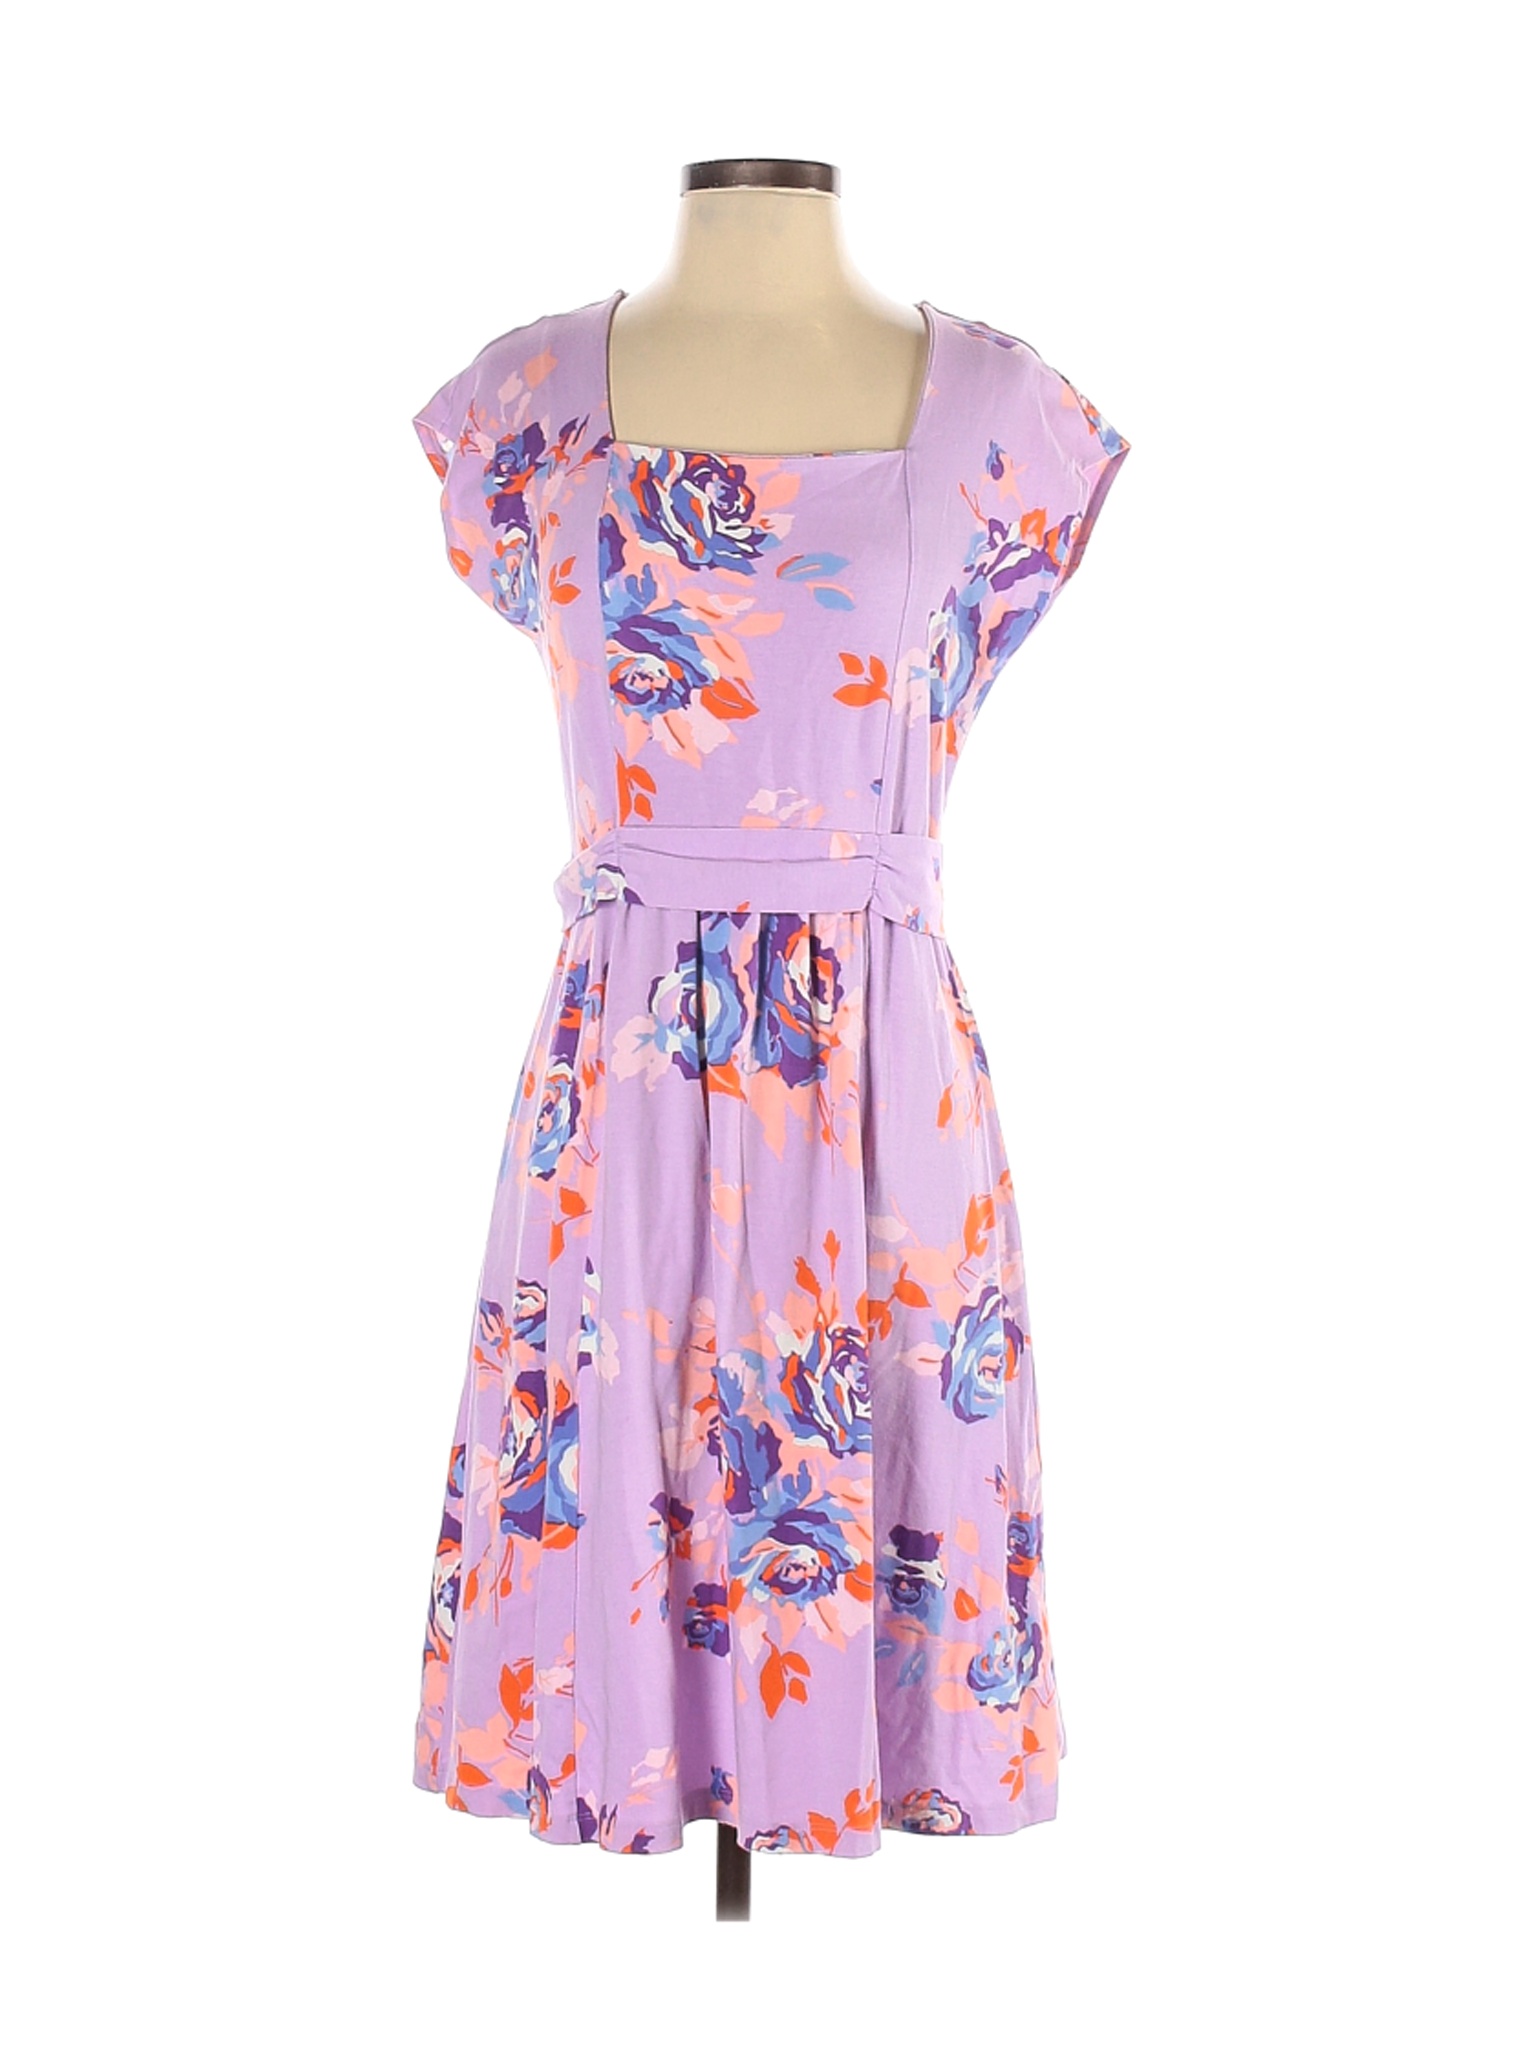 Lands' End Women Purple Casual Dress S | eBay